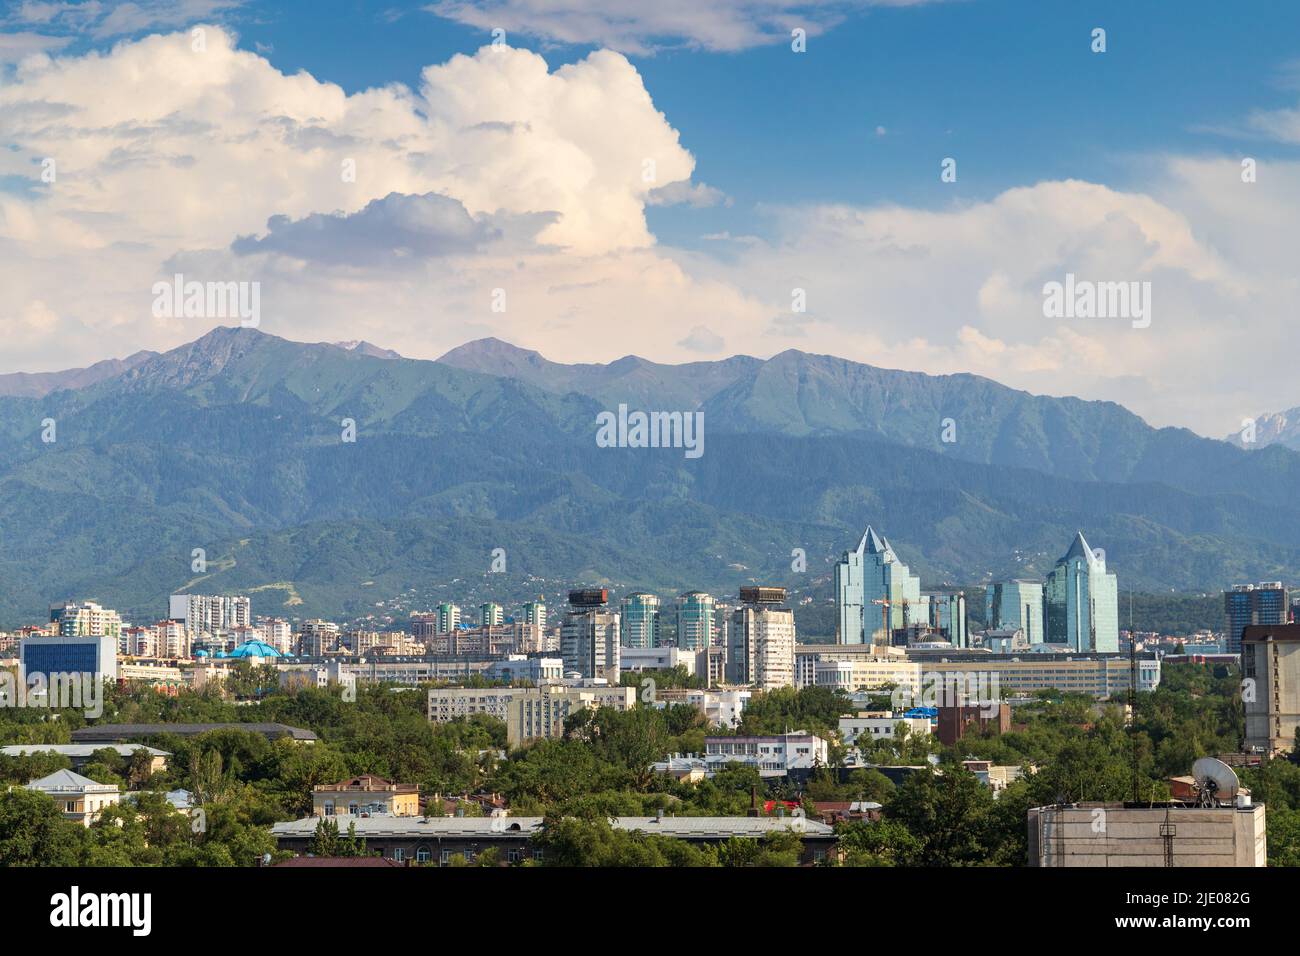 Dichte Entwicklung des Stadtzentrums von Almaty mit neuen Gebäuden. Almaty, Kasachstan - 02. Juli 2021 Stockfoto